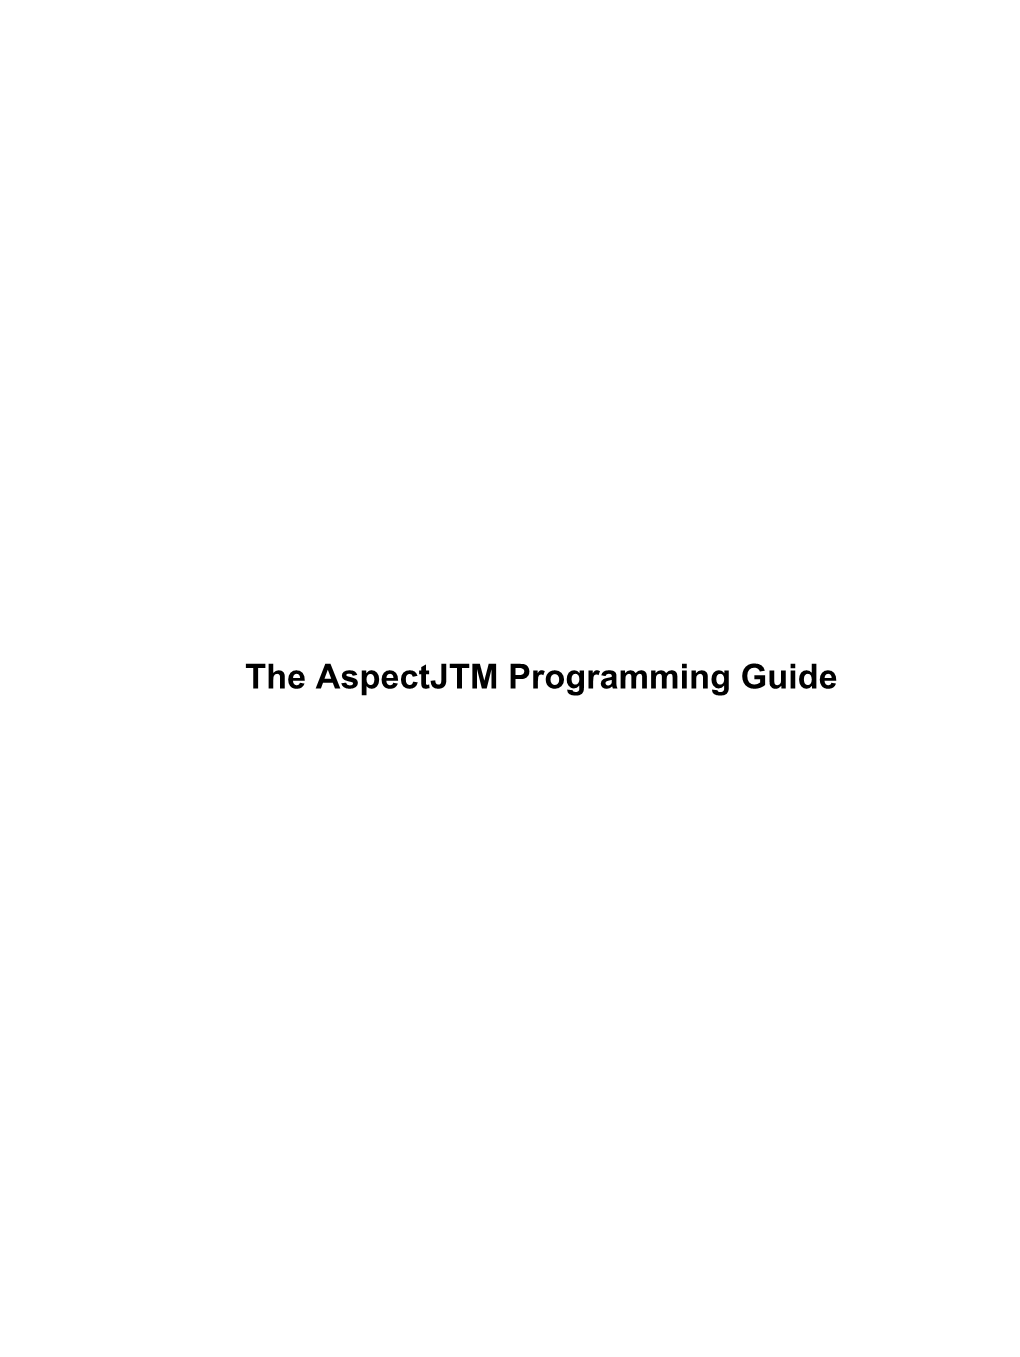 The Aspectjtm Programming Guide the Aspectjtm Programming Guide